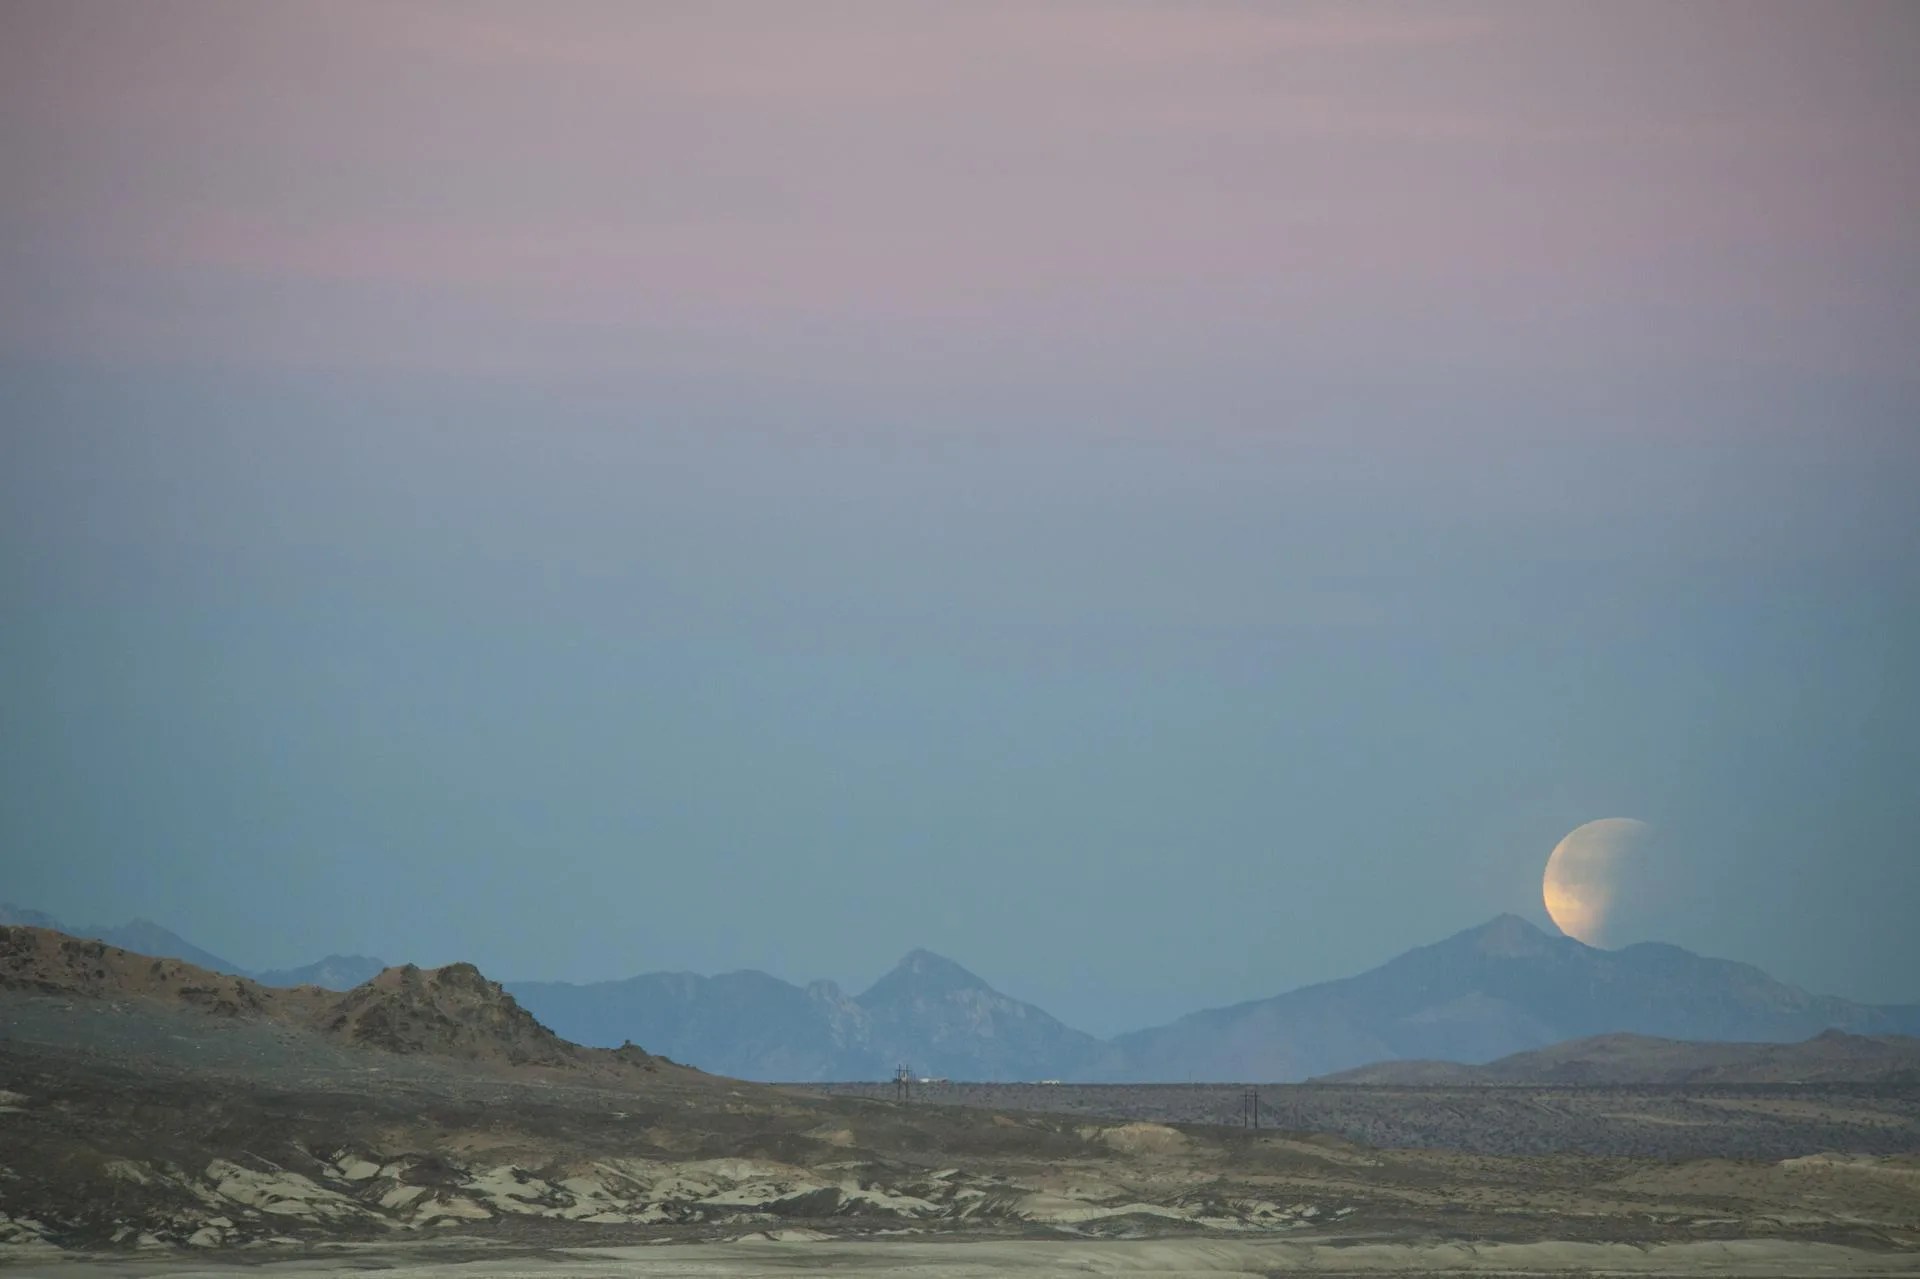 moon setting over desert landscape